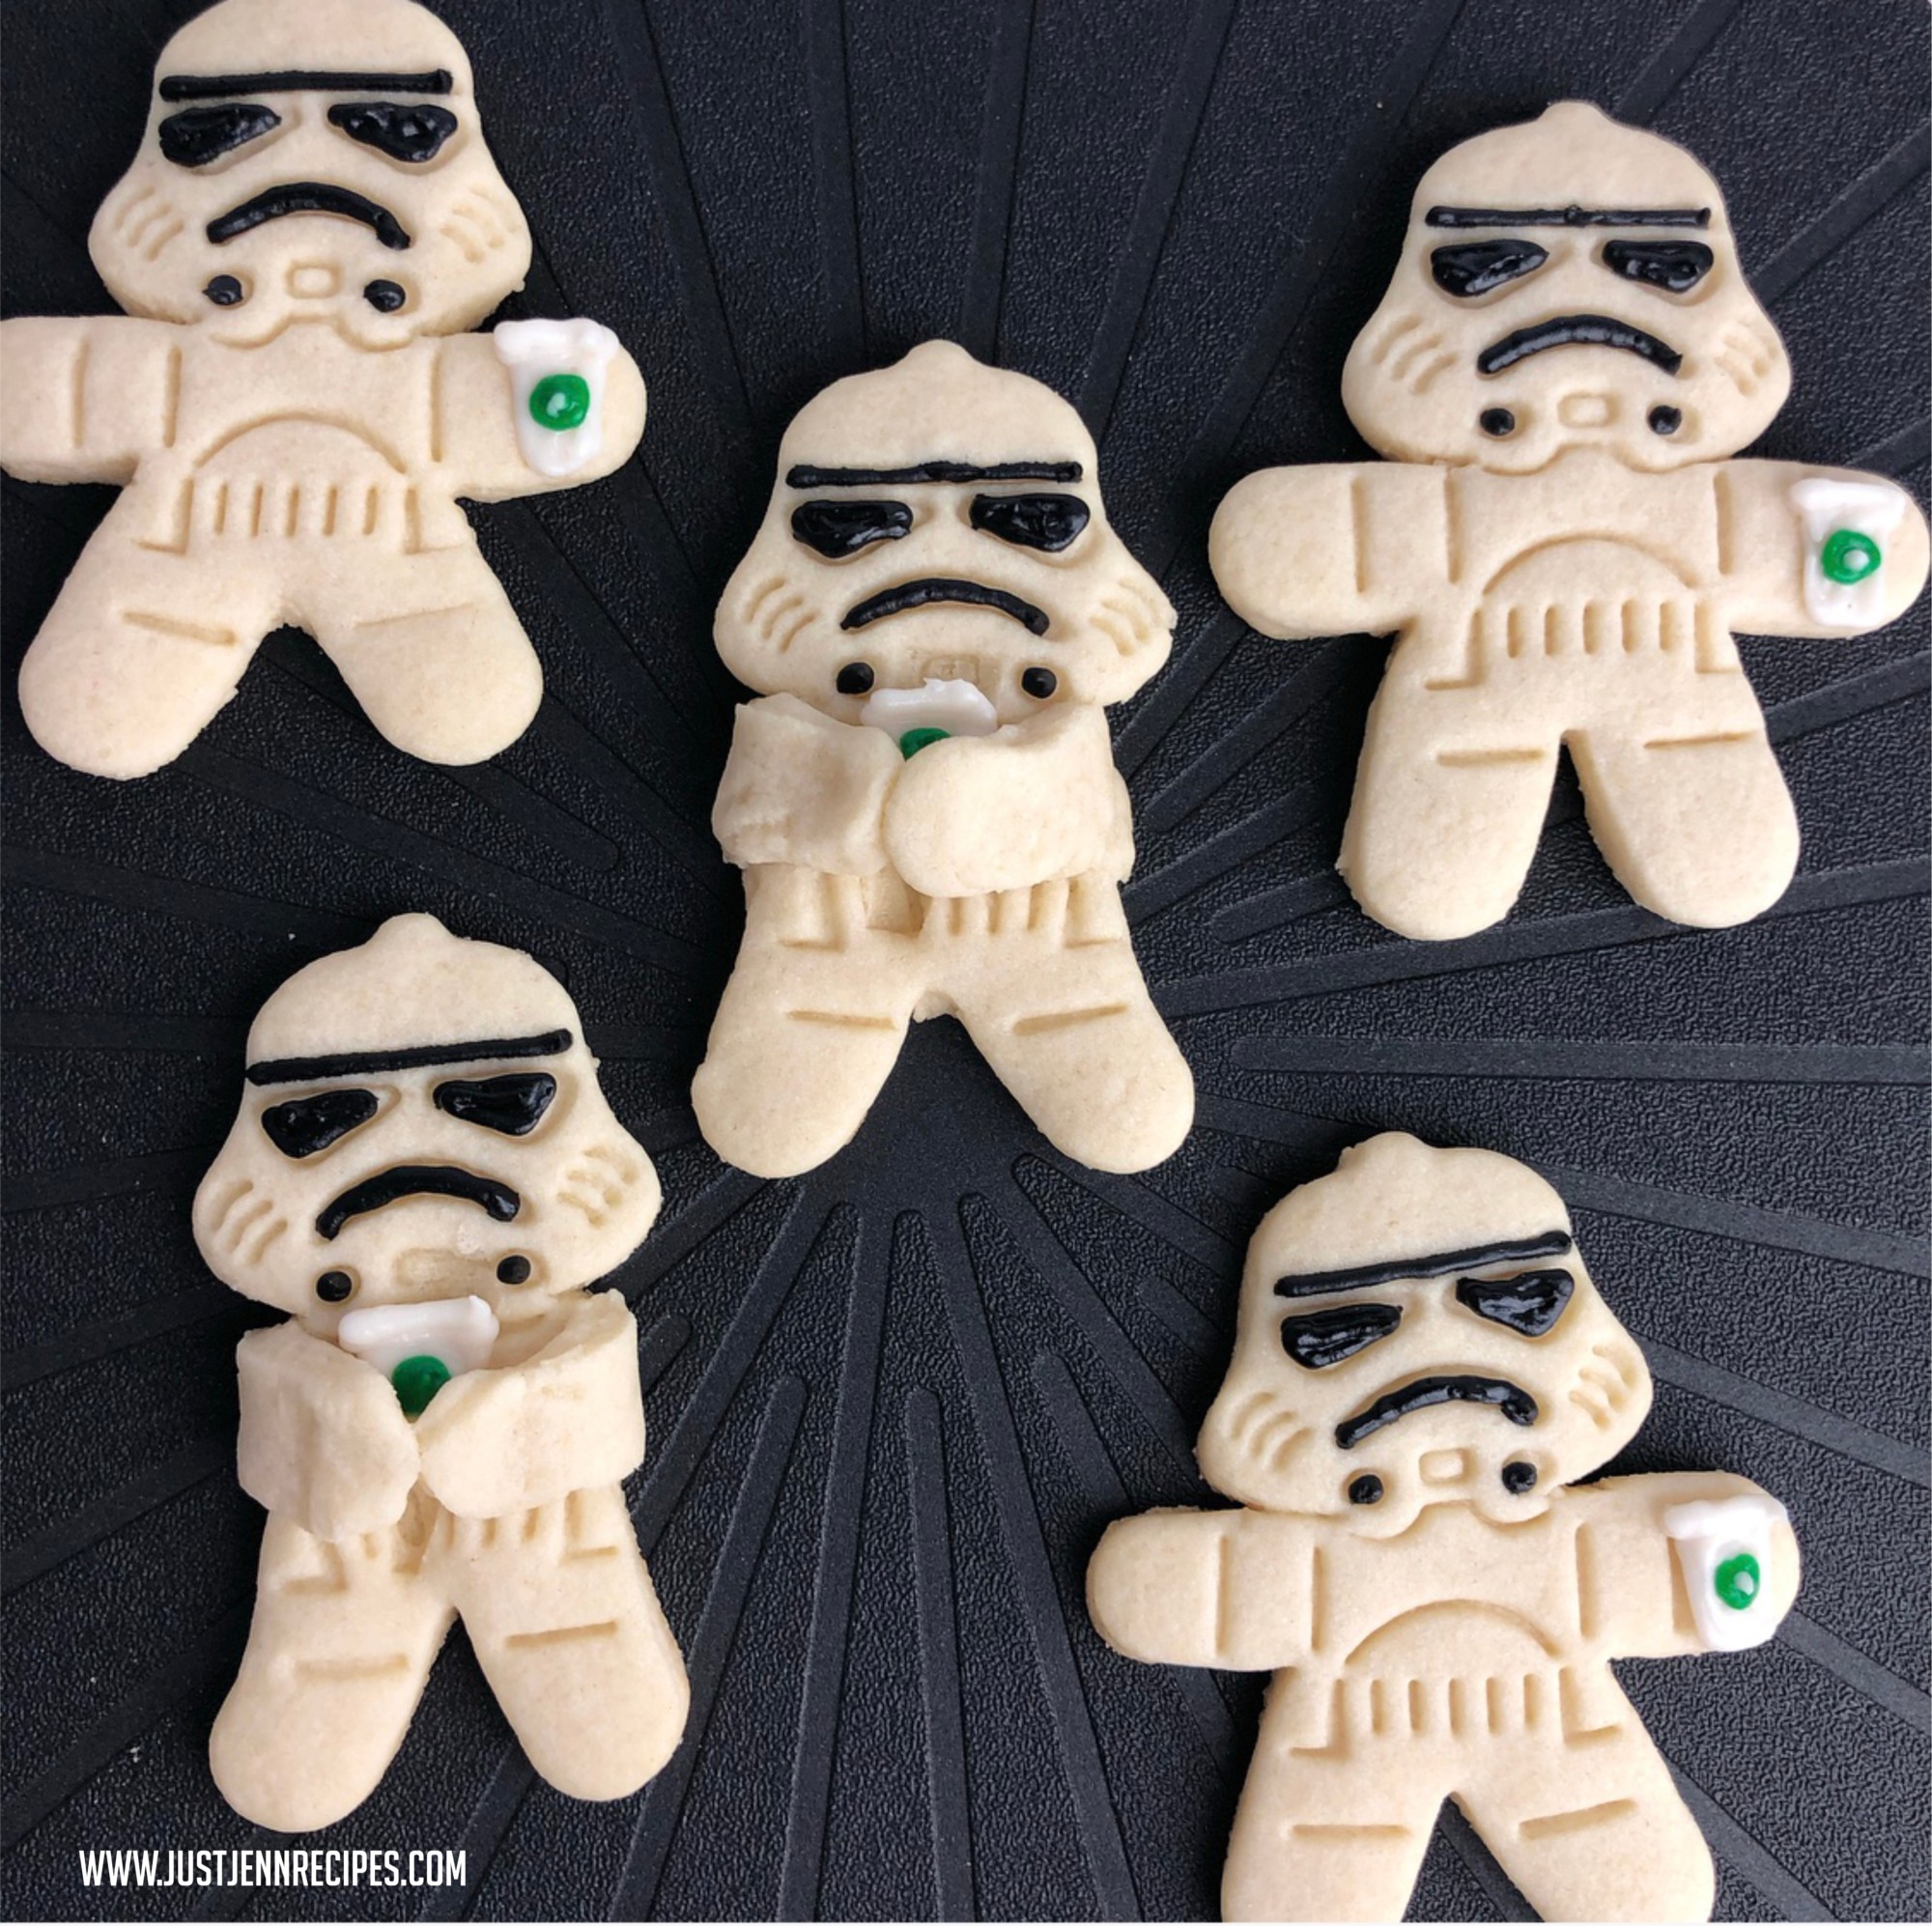 Stormtrooper-Coffee-Break-Cookies.jpg